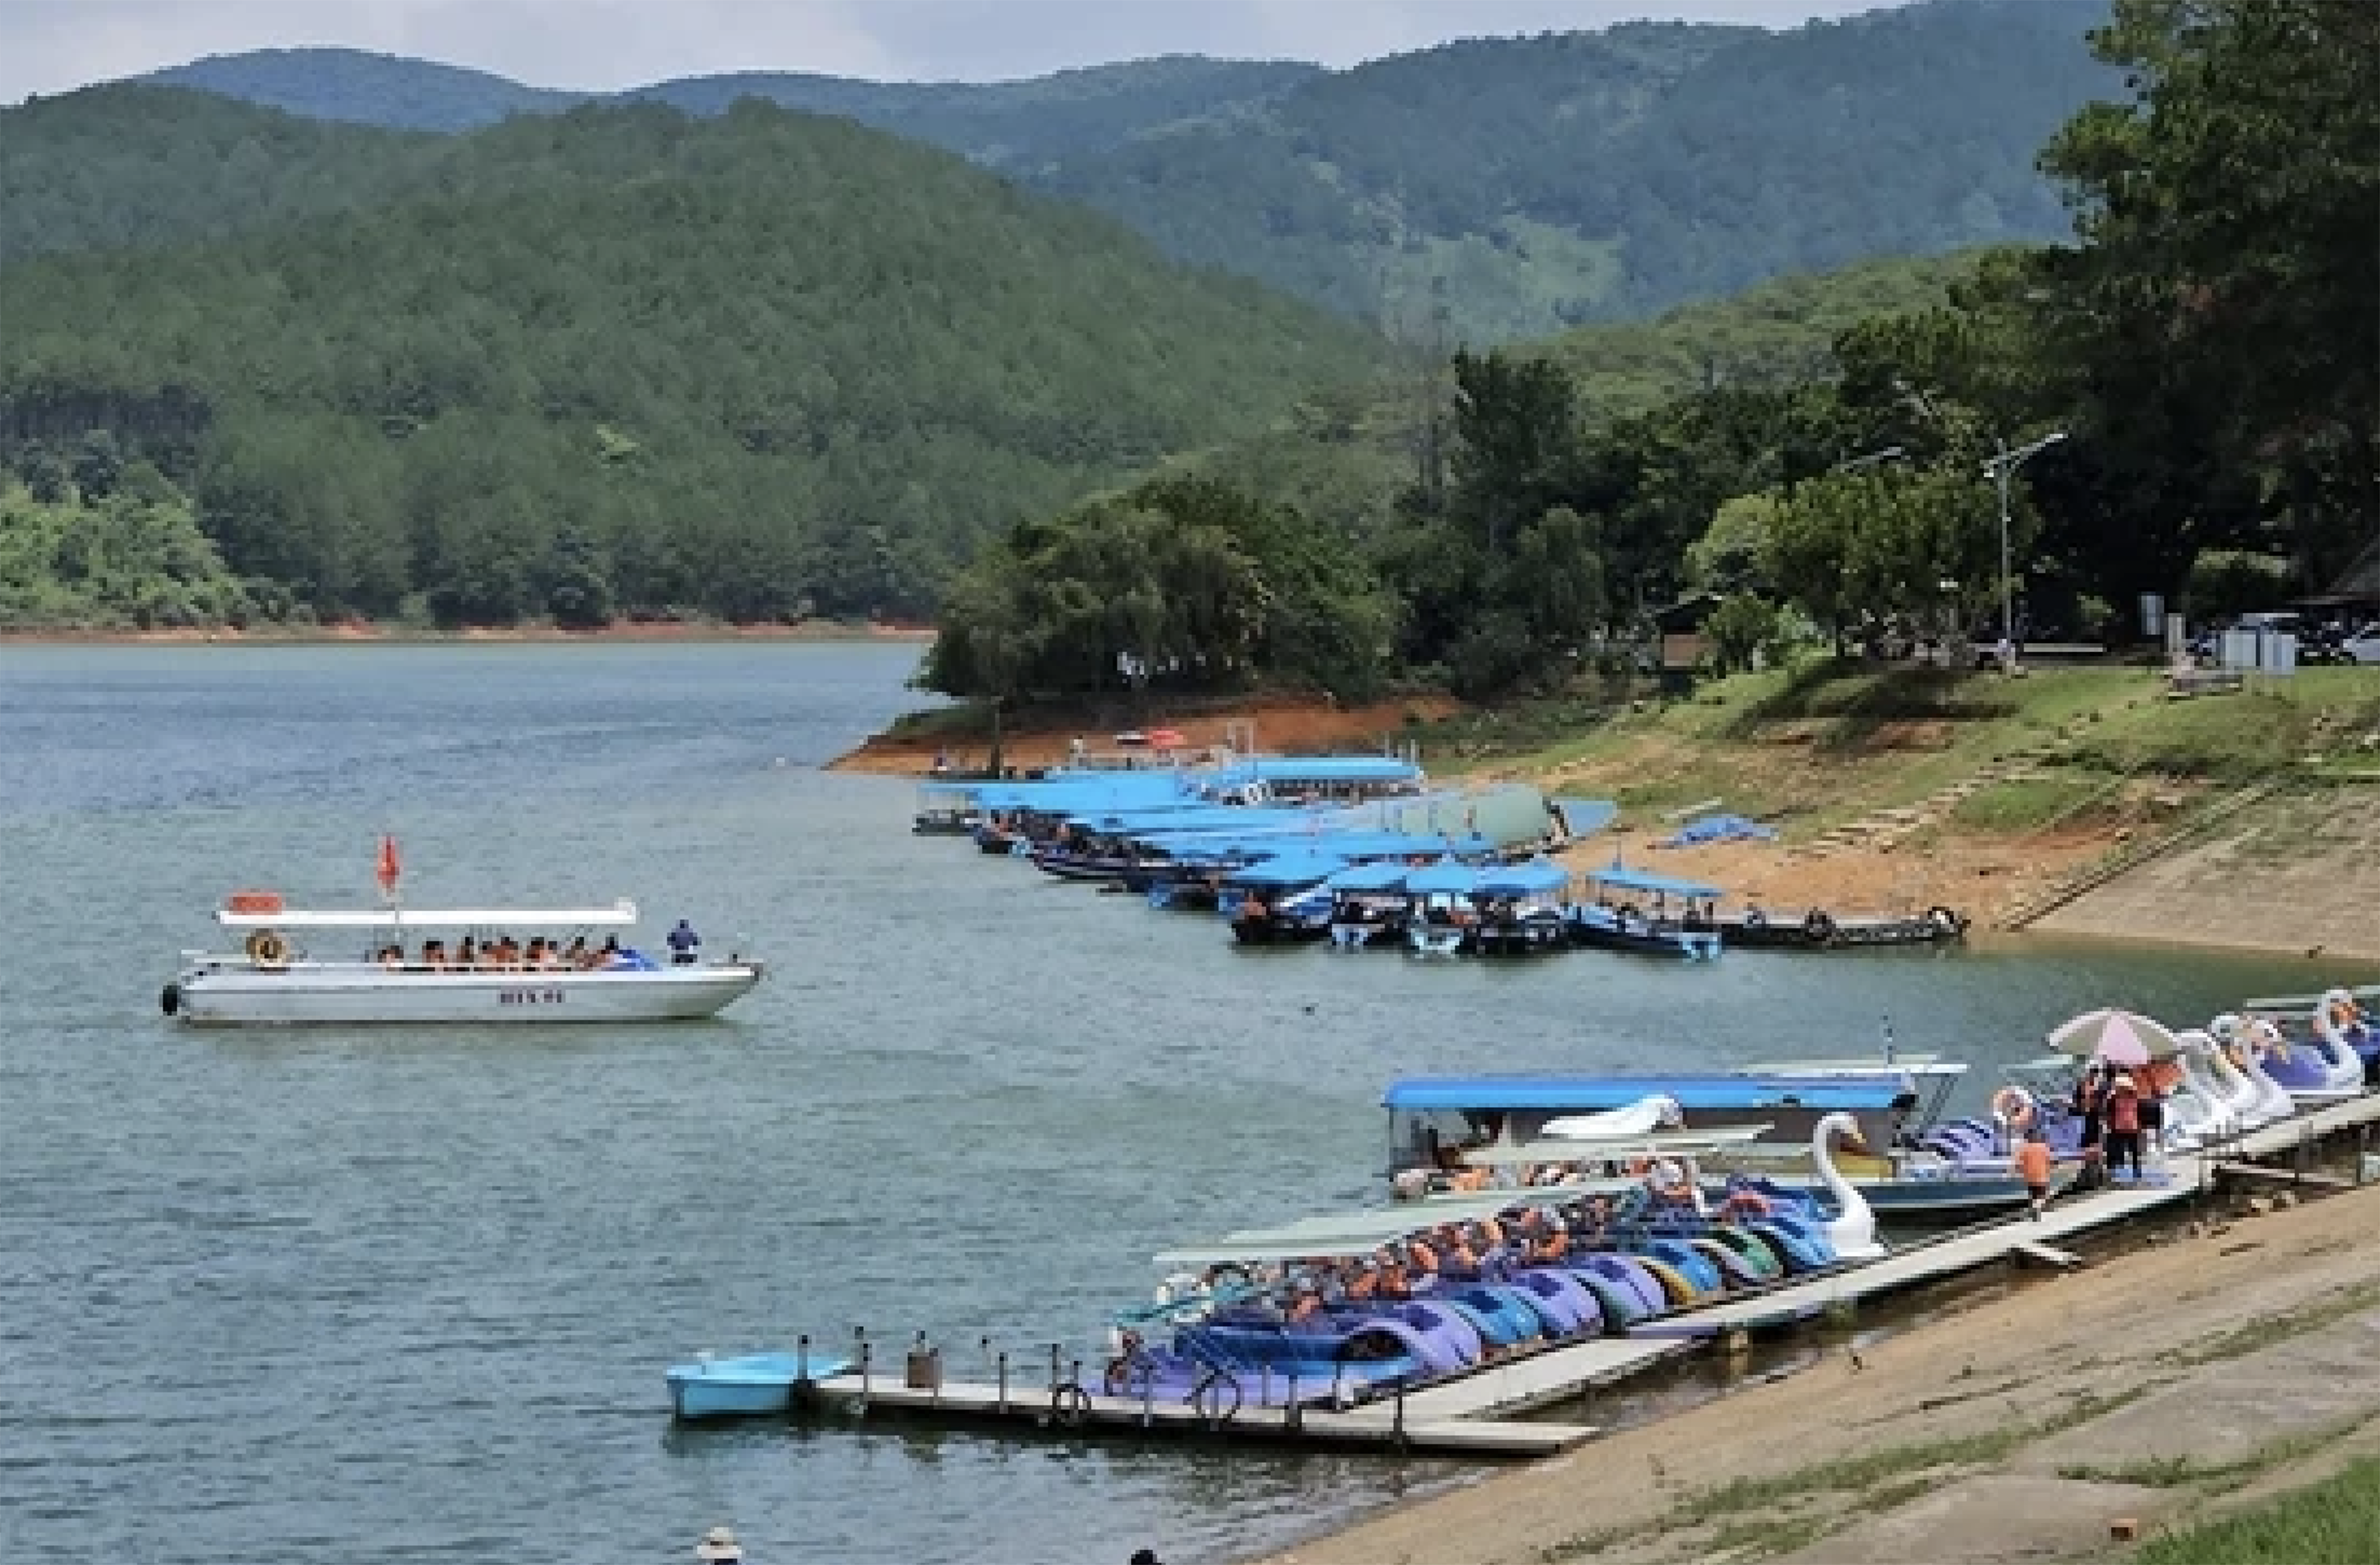 Dân sinh - Bất chấp chỉ đạo của UBND tỉnh Lâm Đồng, du thuyền vẫn hoạt động trên hồ Tuyền Lâm (Hình 6).